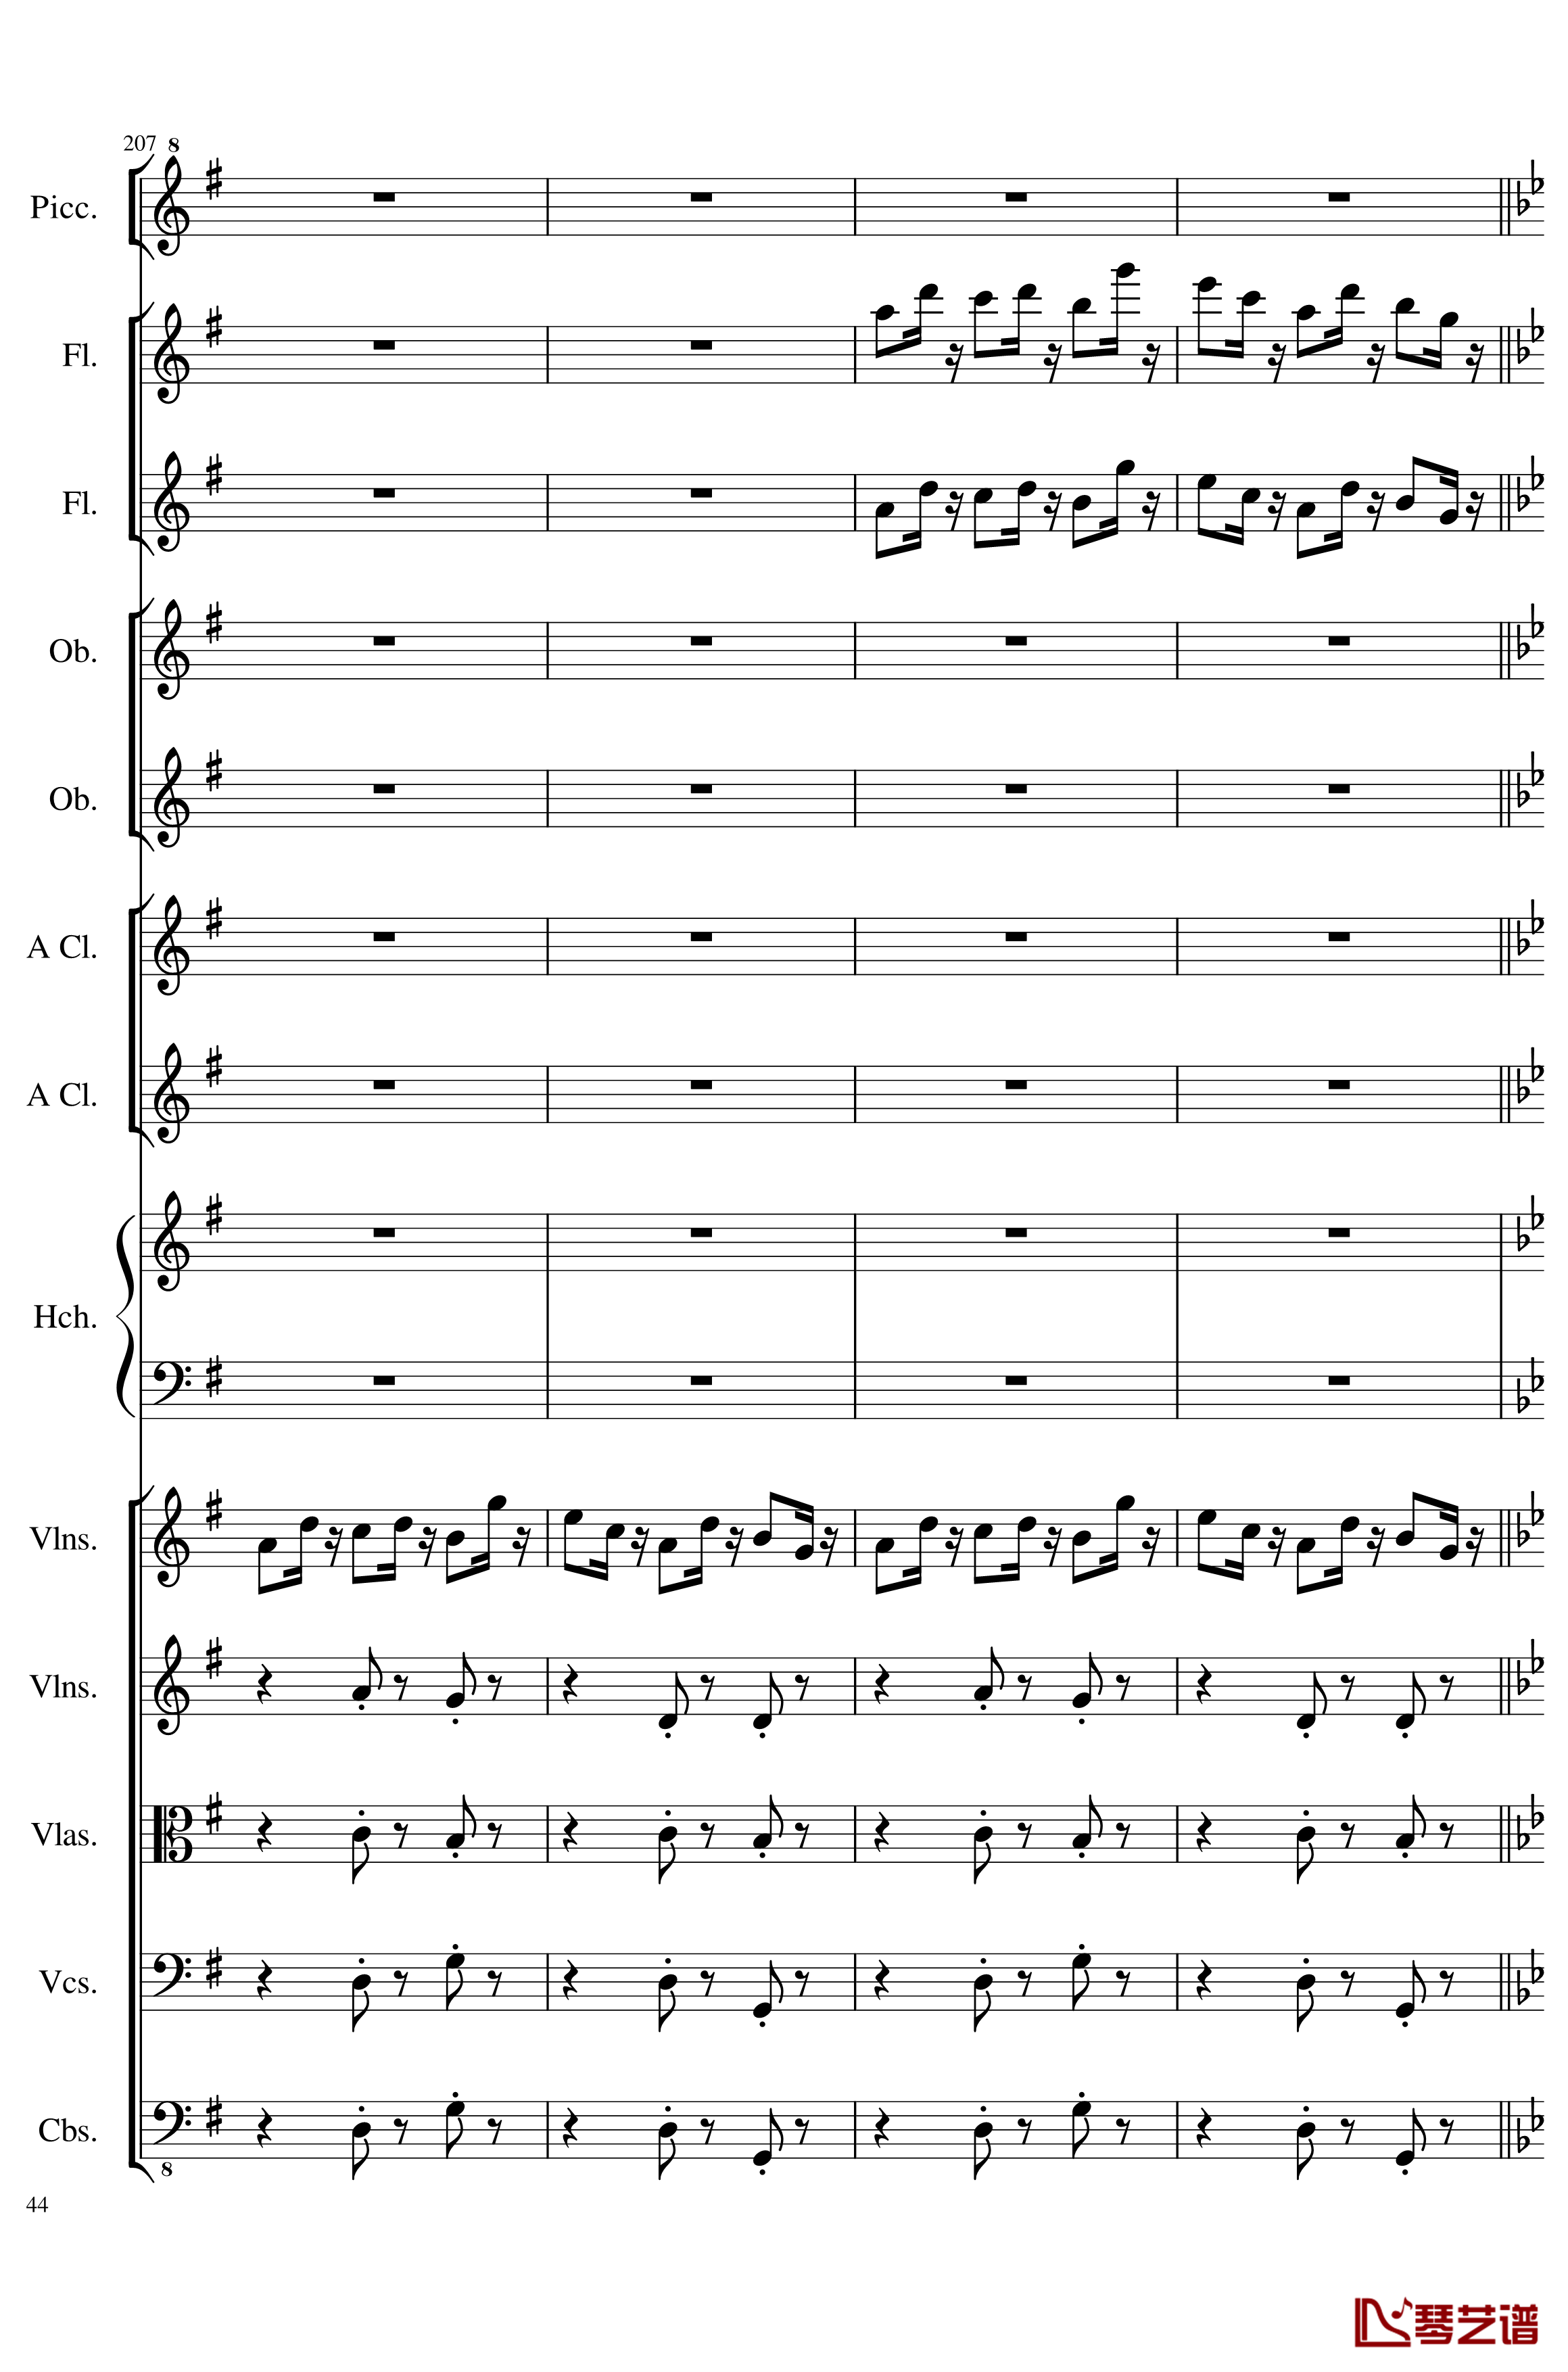 7 Contredanses No.1-7, Op.124钢琴谱-7首乡村舞曲，第一至第七，作品124-一个球44